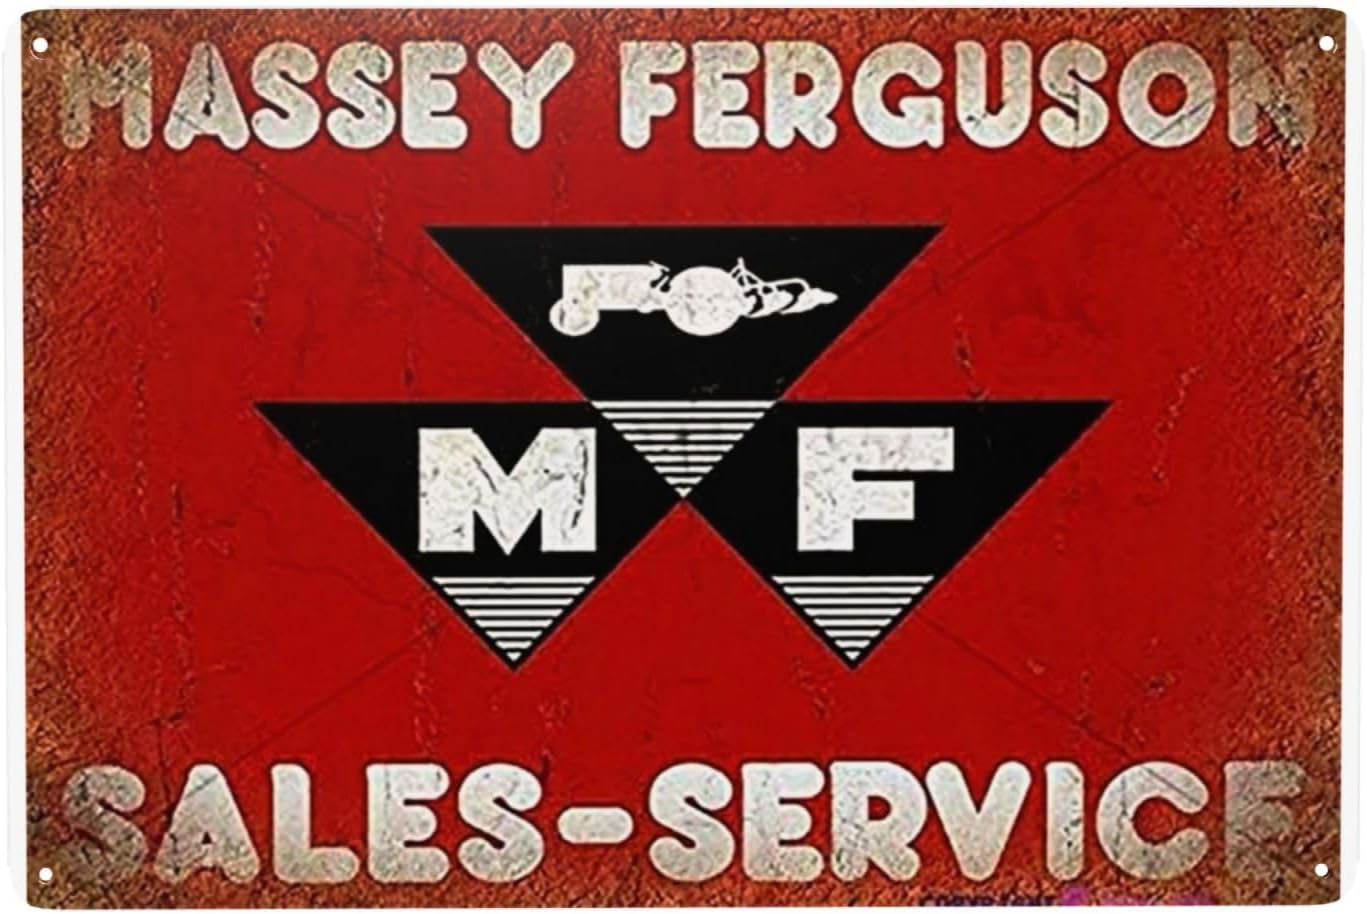 Retro Metal Tin Sign - Massey Ferguson Logo - Nostalgic Vintage Metal Wall Decor